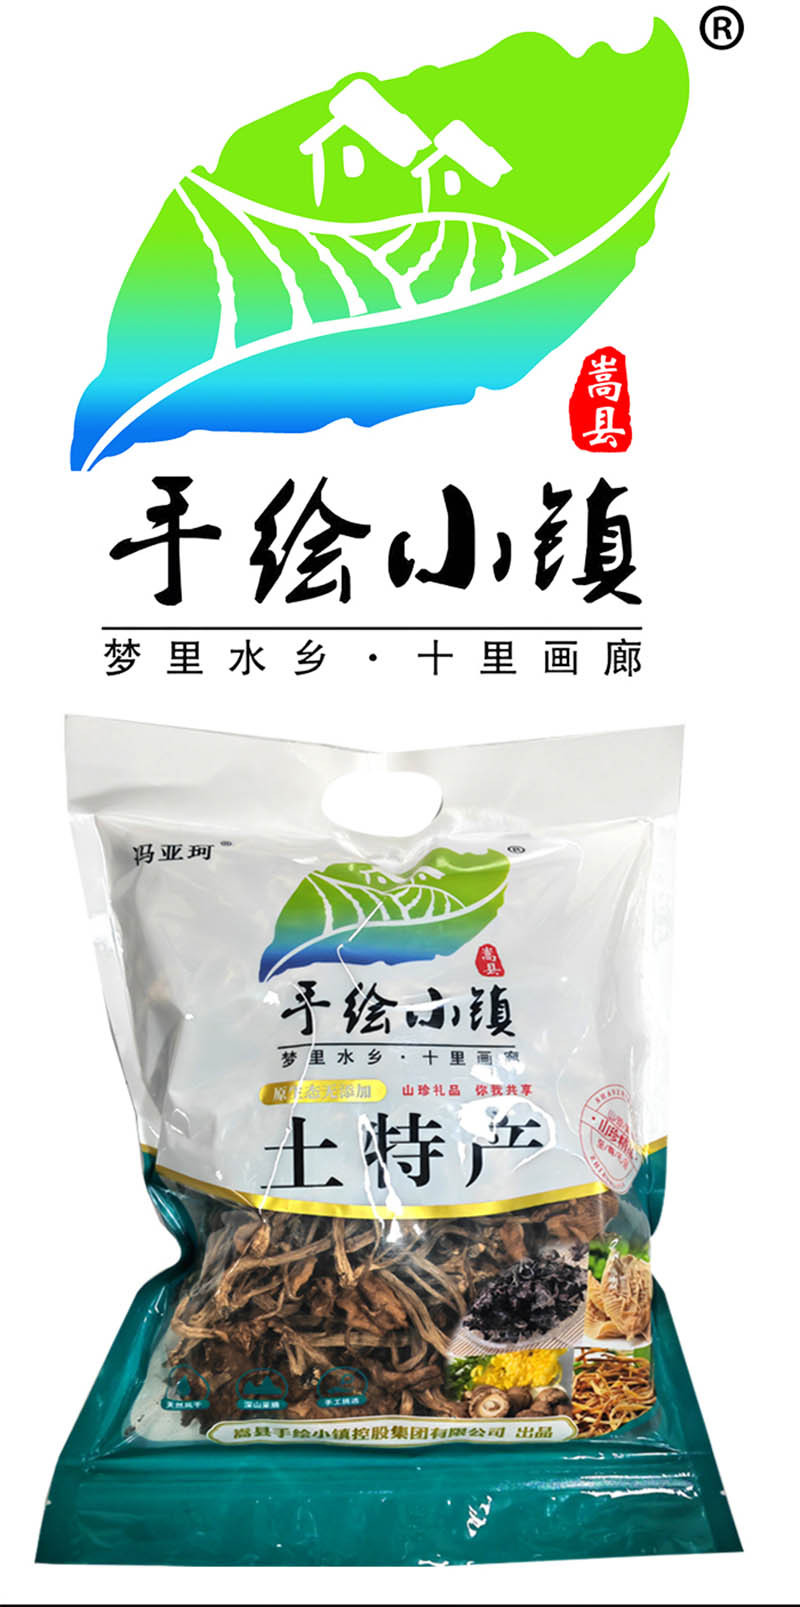  洛阳农品 手绘小镇 茶树菇250g嵩县特产新鲜菌菇干货优质山珍